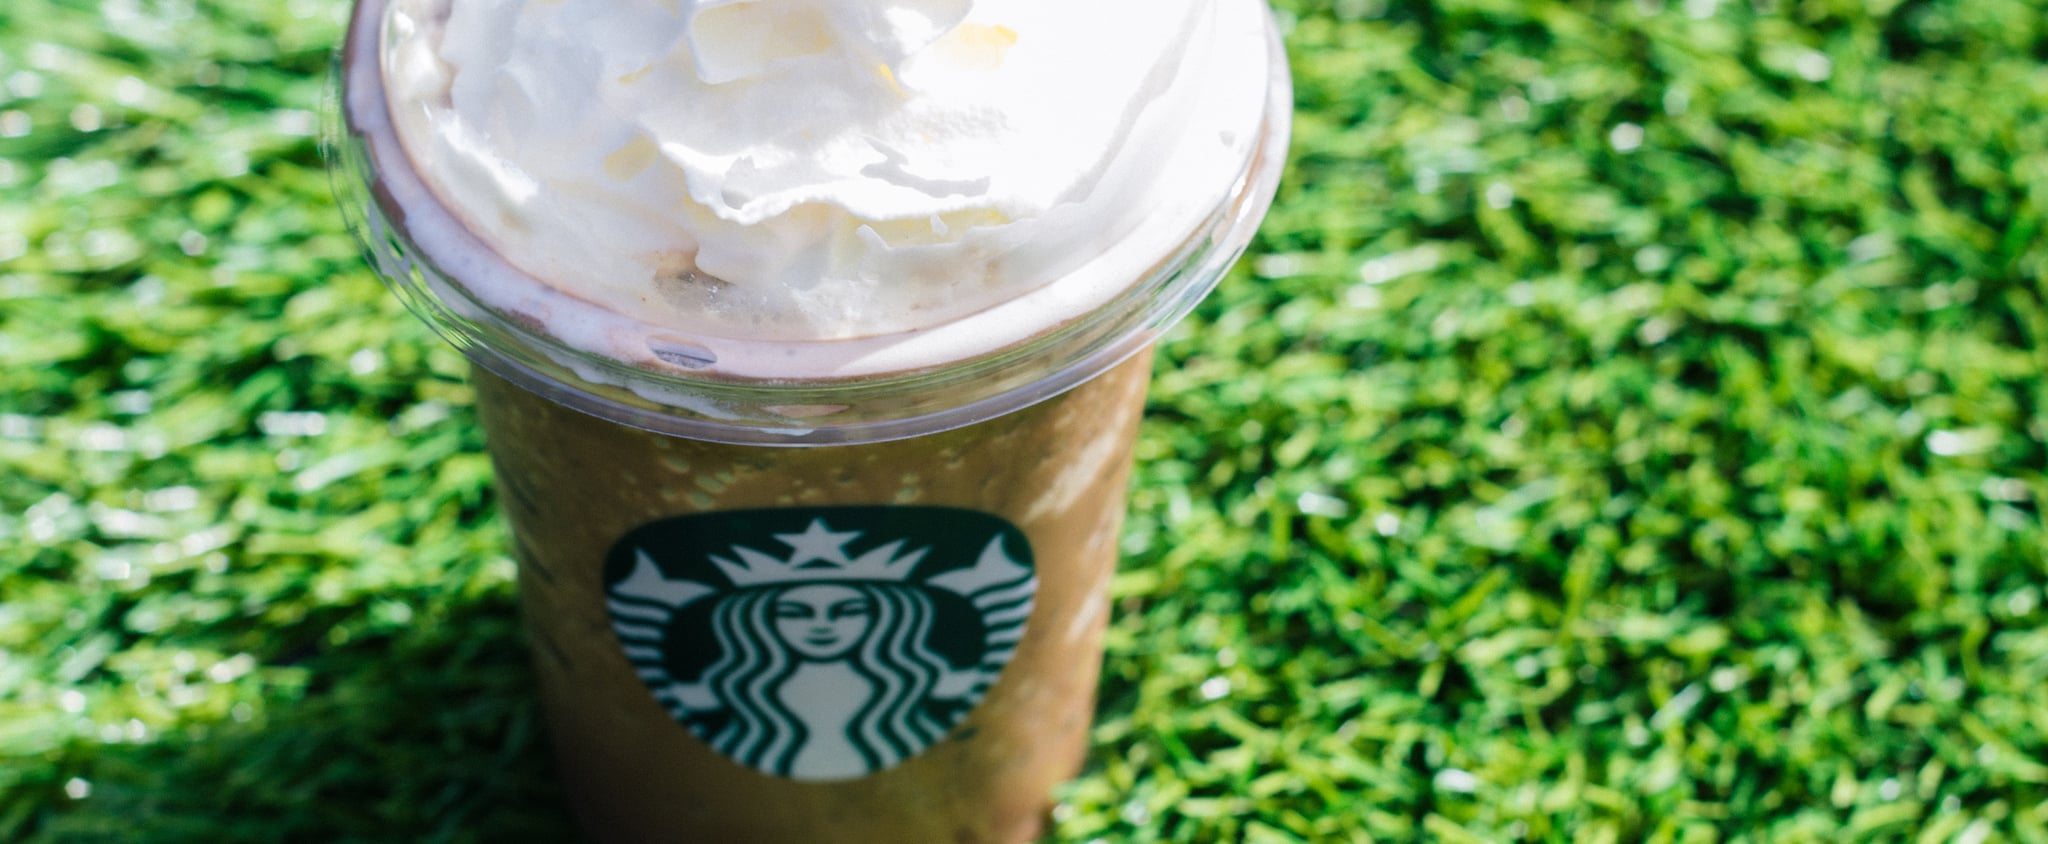 Starbucks Copycat Green Tea Frappuccino Recipe - 30 minutes meals